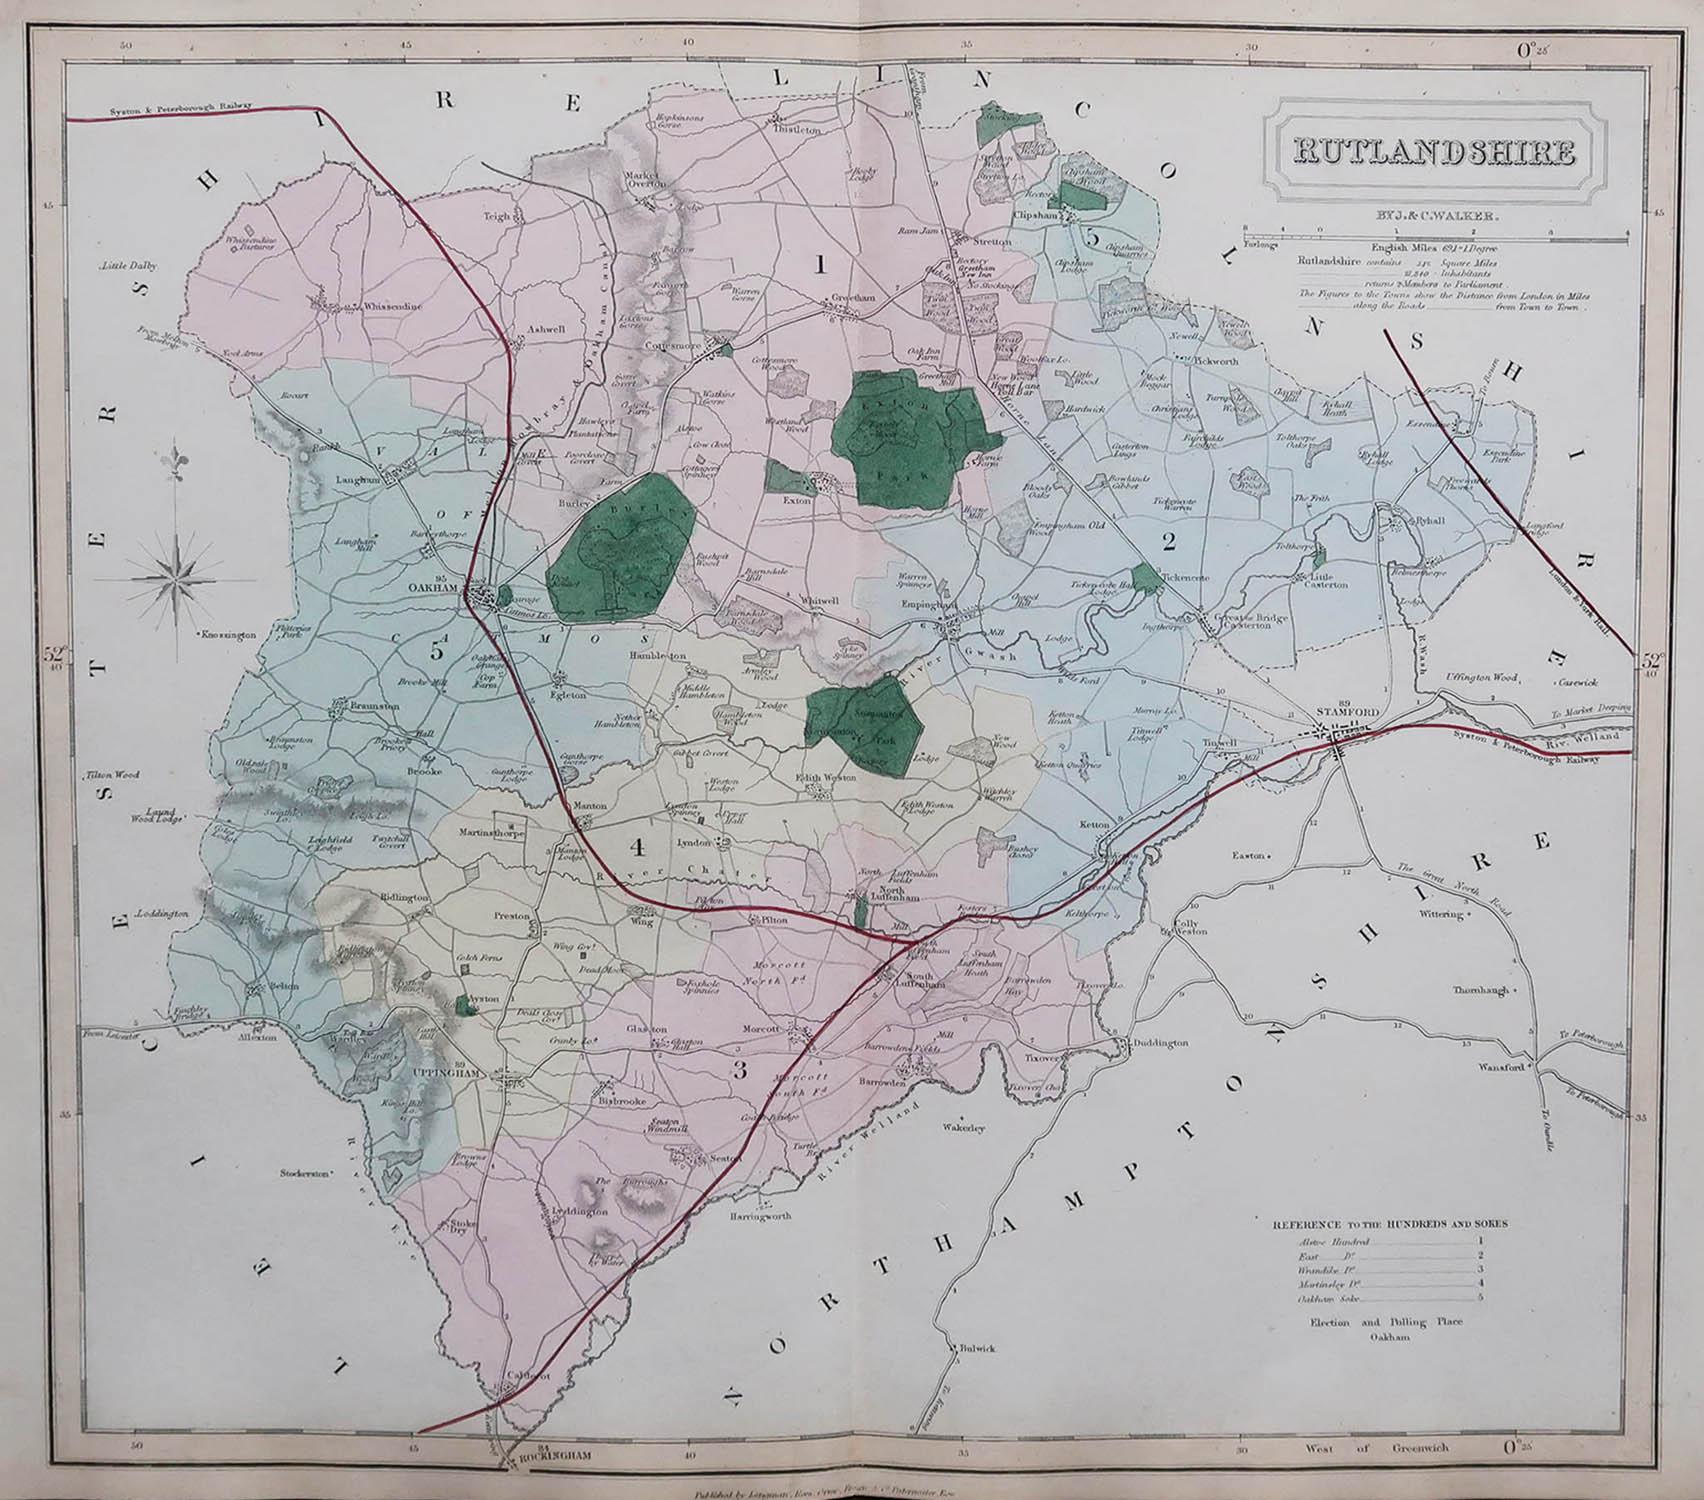 Tolle Karte von Rutland

Original Farbe

Von J & C Walker

Veröffentlicht von Longman, Rees, Orme, Brown & Co. 1851

Ungerahmt.




